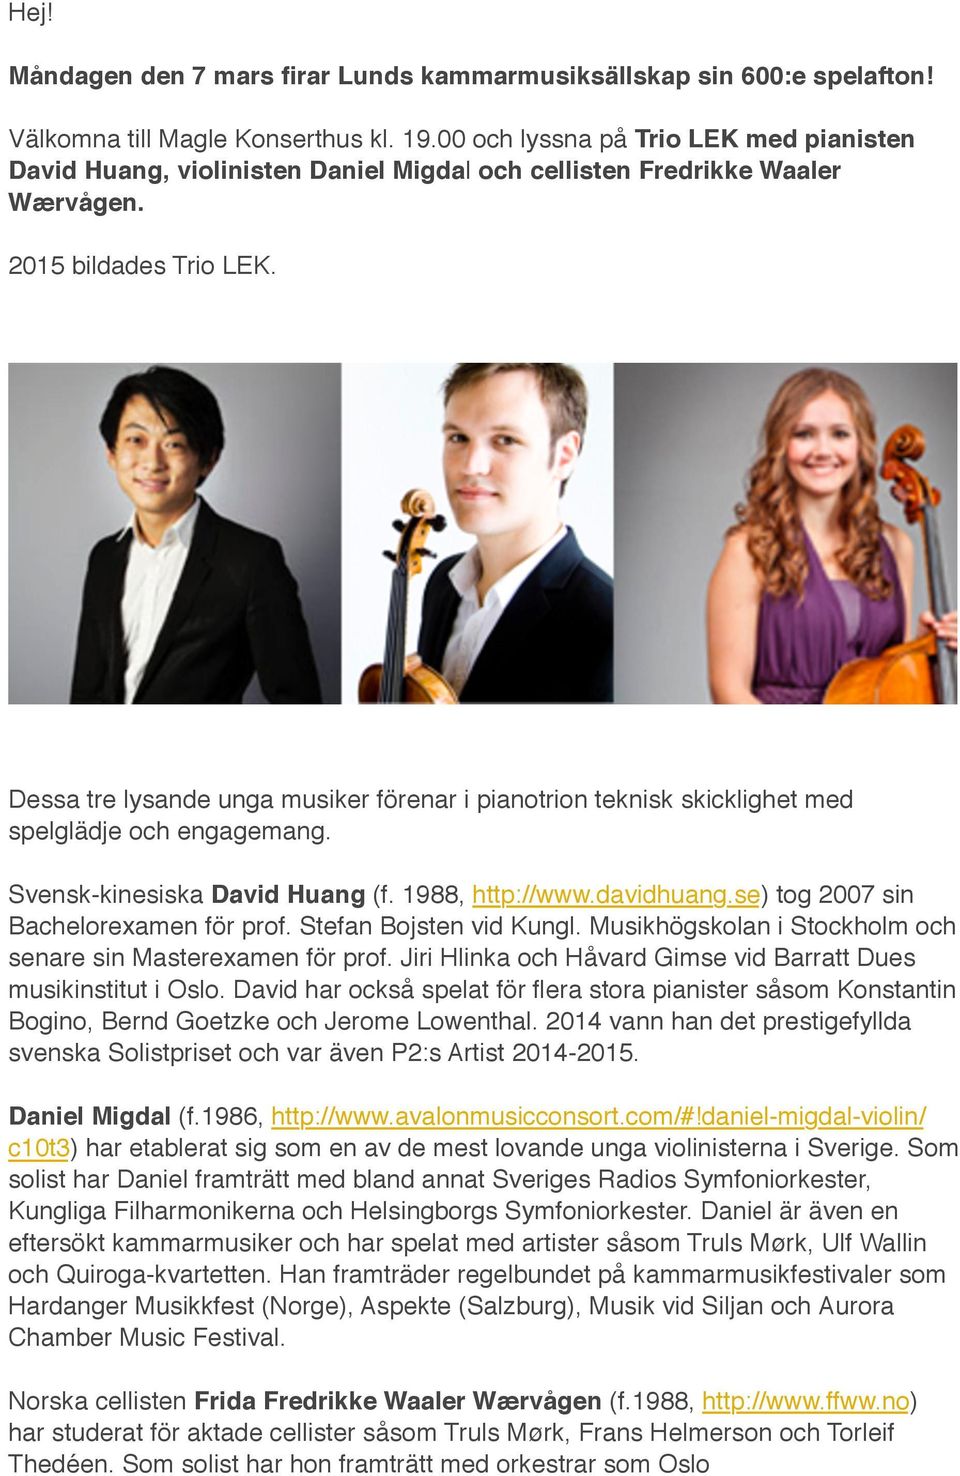 Dessa tre lysande unga musiker förenar i pianotrion teknisk skicklighet med spelglädje och engagemang. Svensk-kinesiska David Huang (f. 1988, http://www.davidhuang.